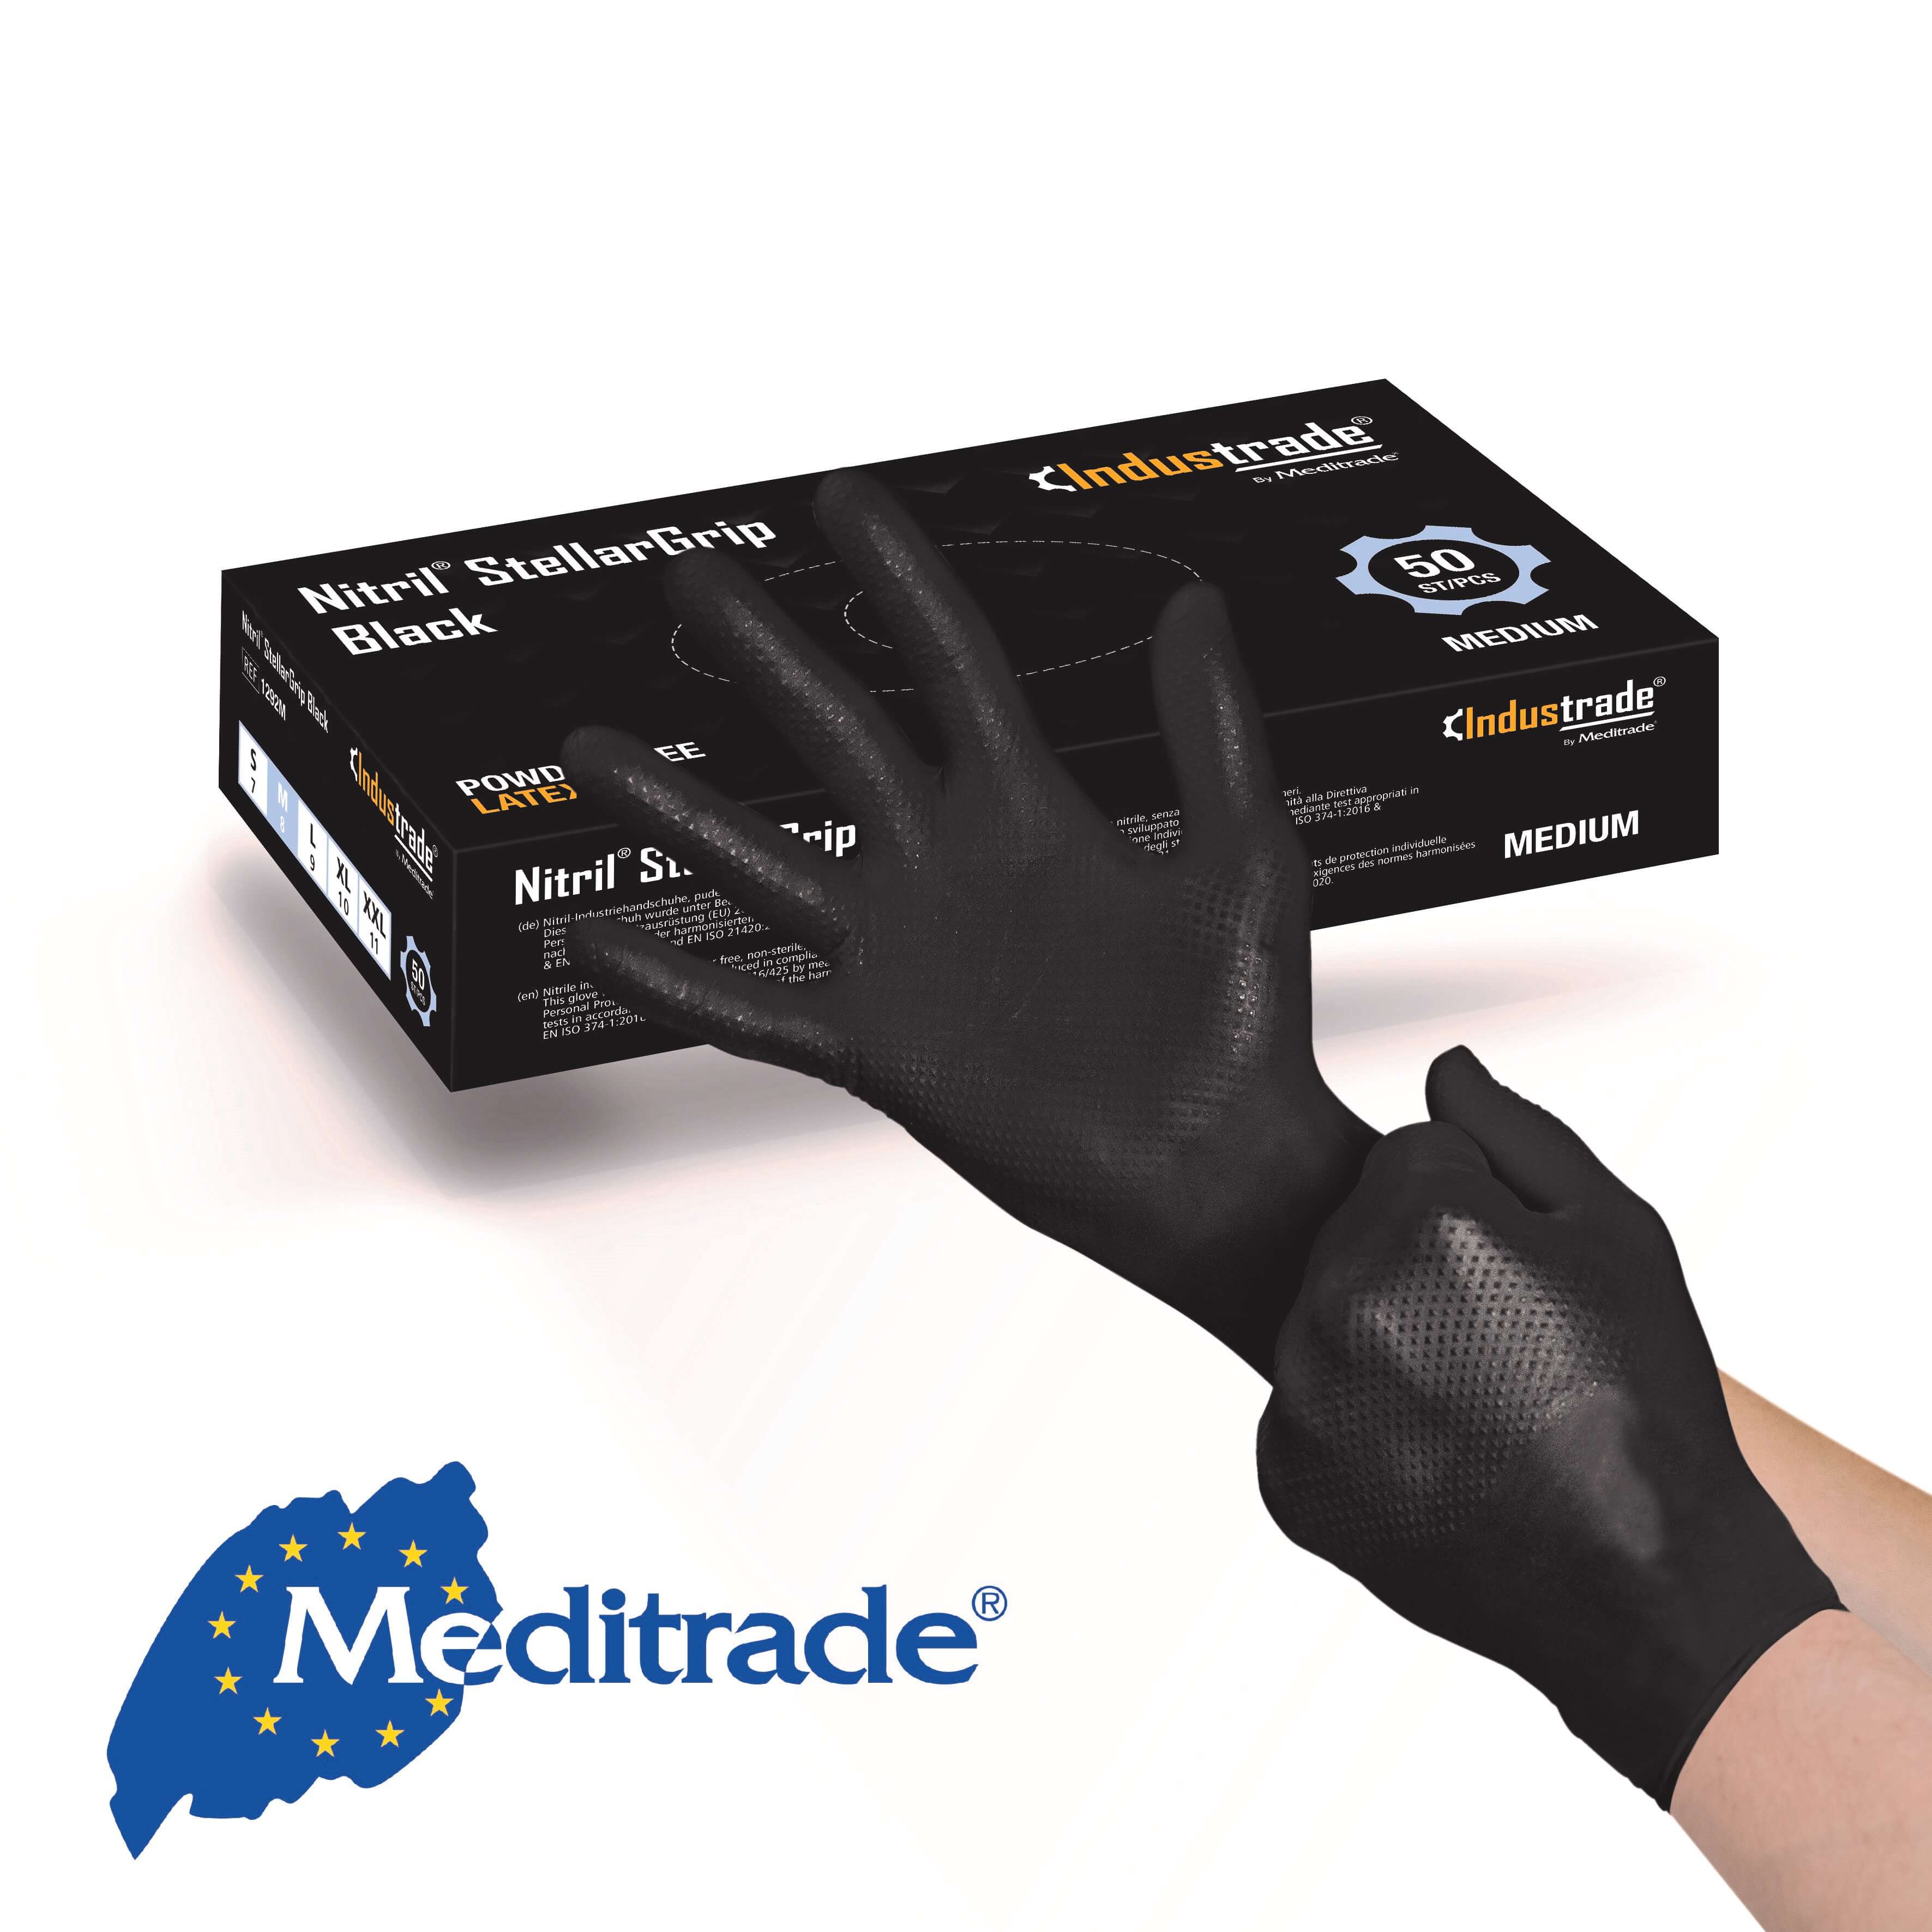 Meditrade Nitril® StellarGrip Black Schutzhandschuh Gr. XL